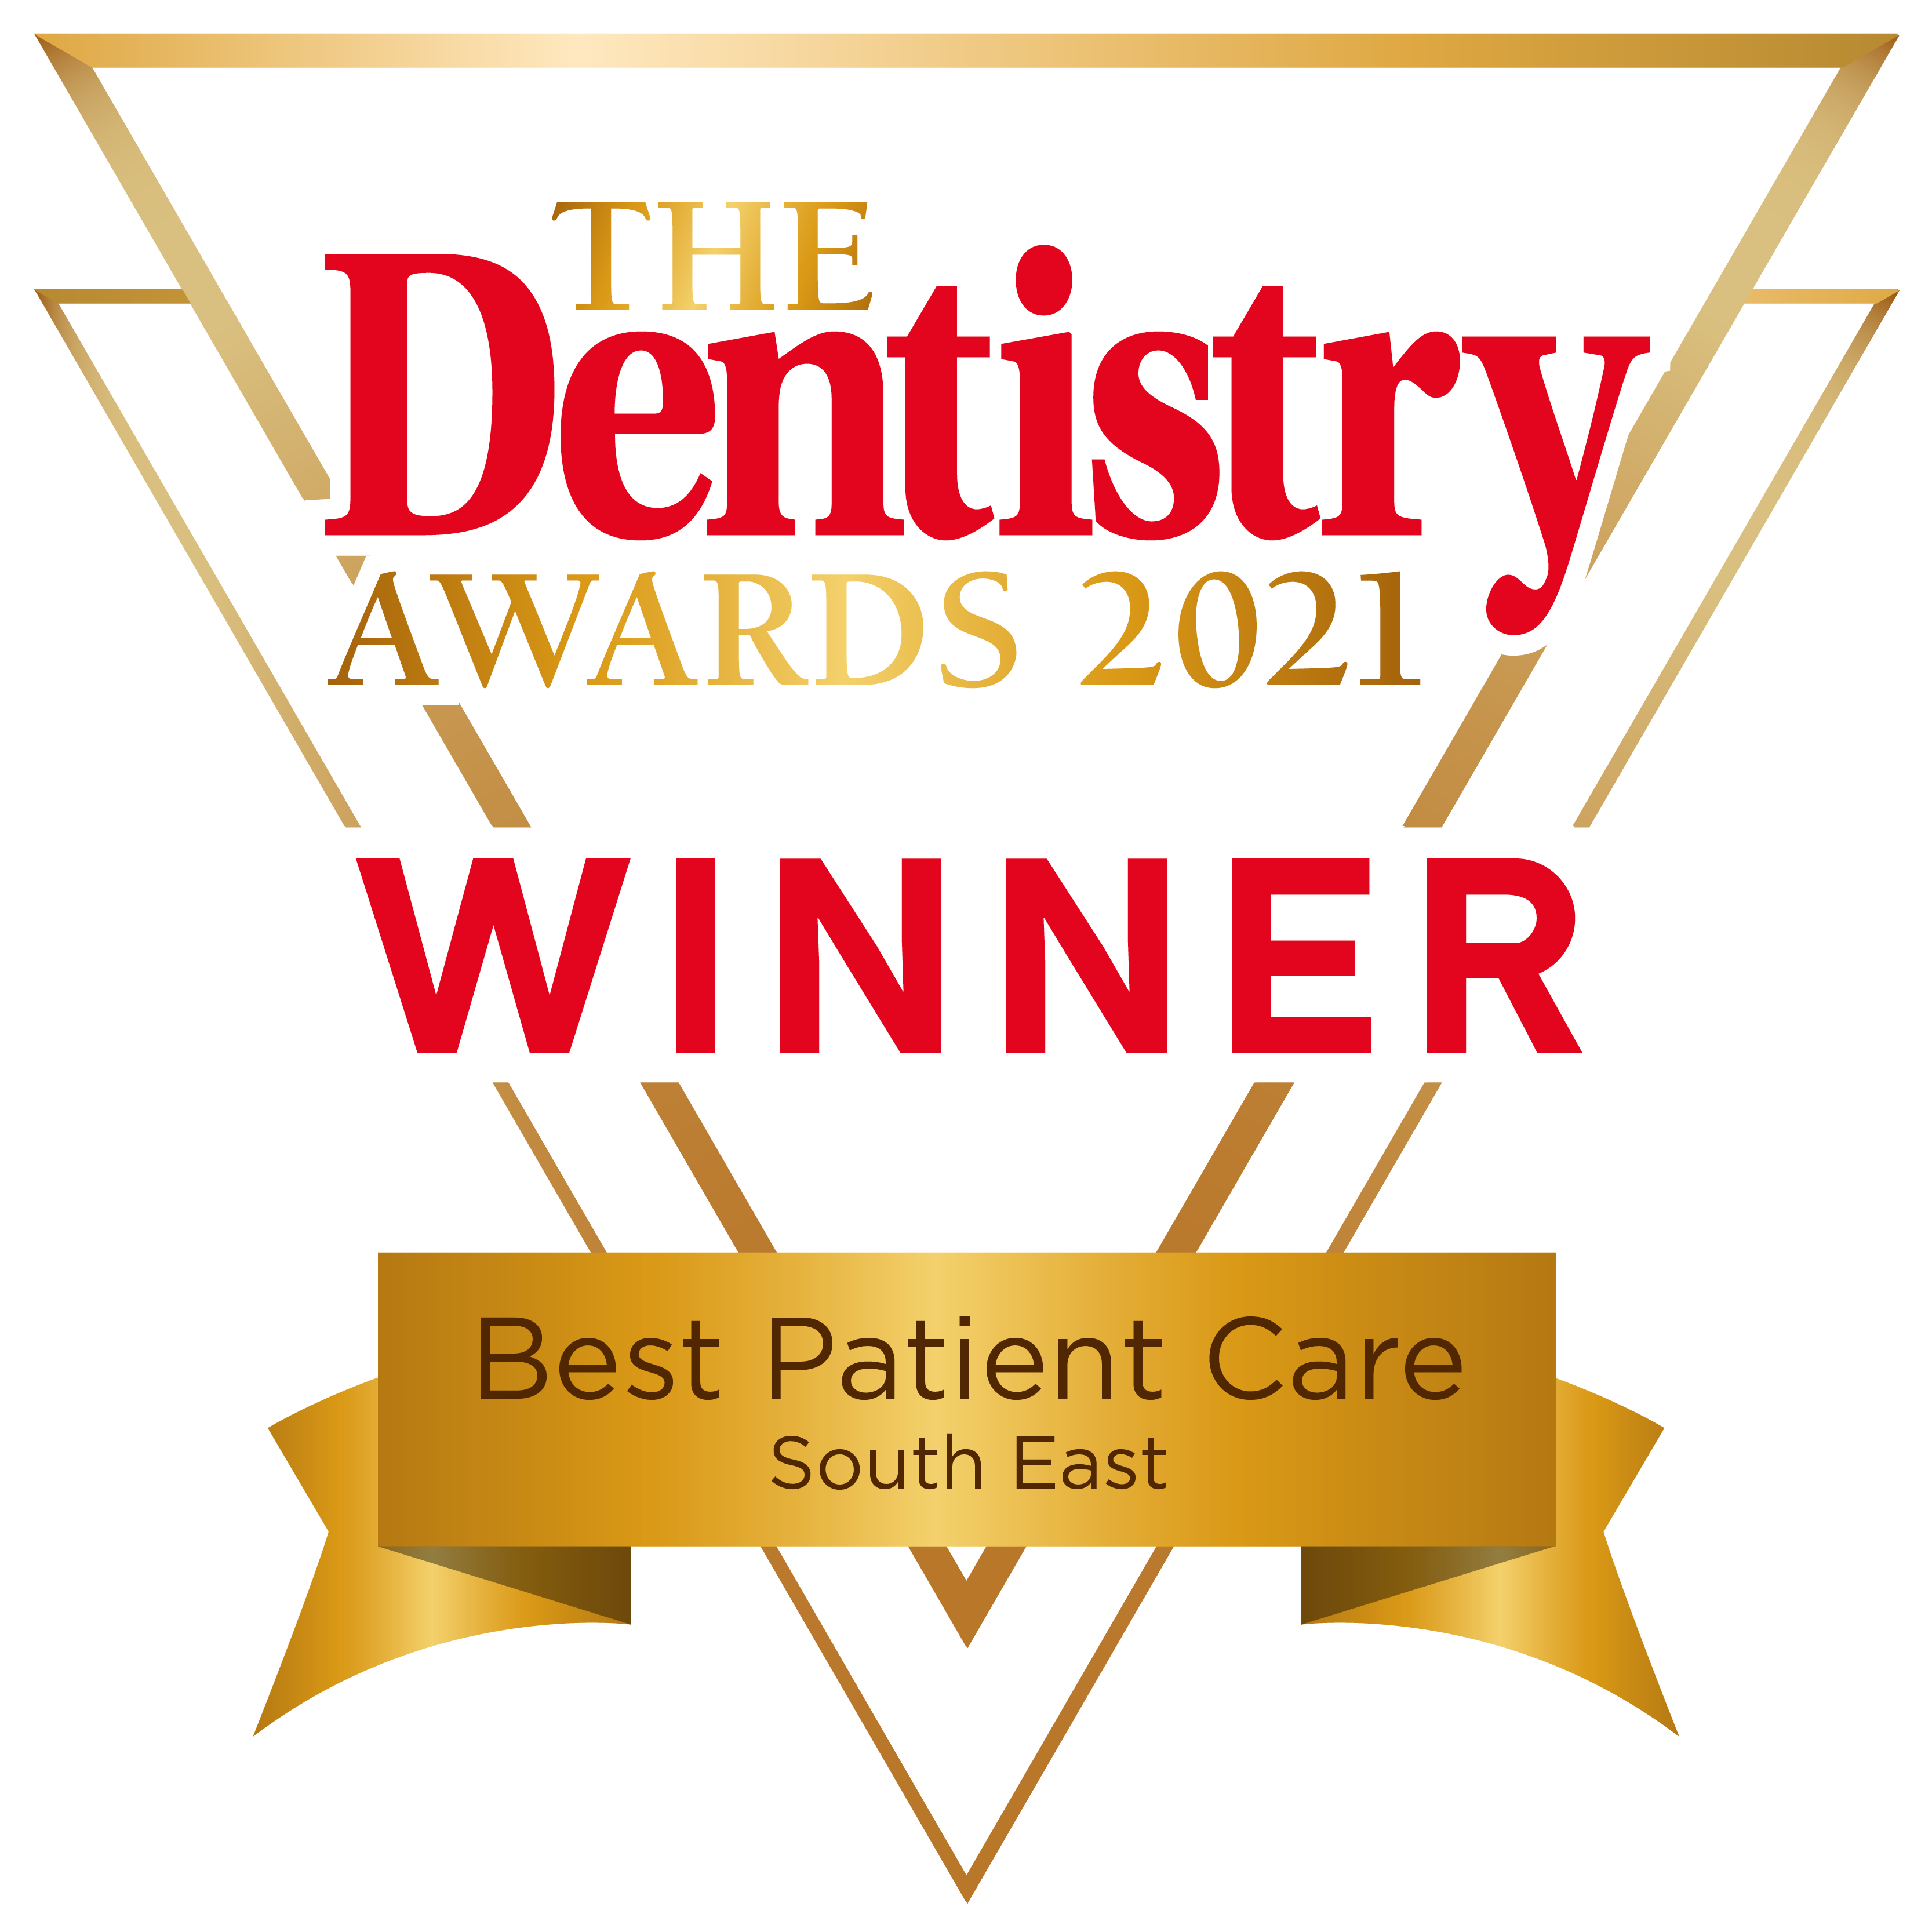 dentistry awards logo